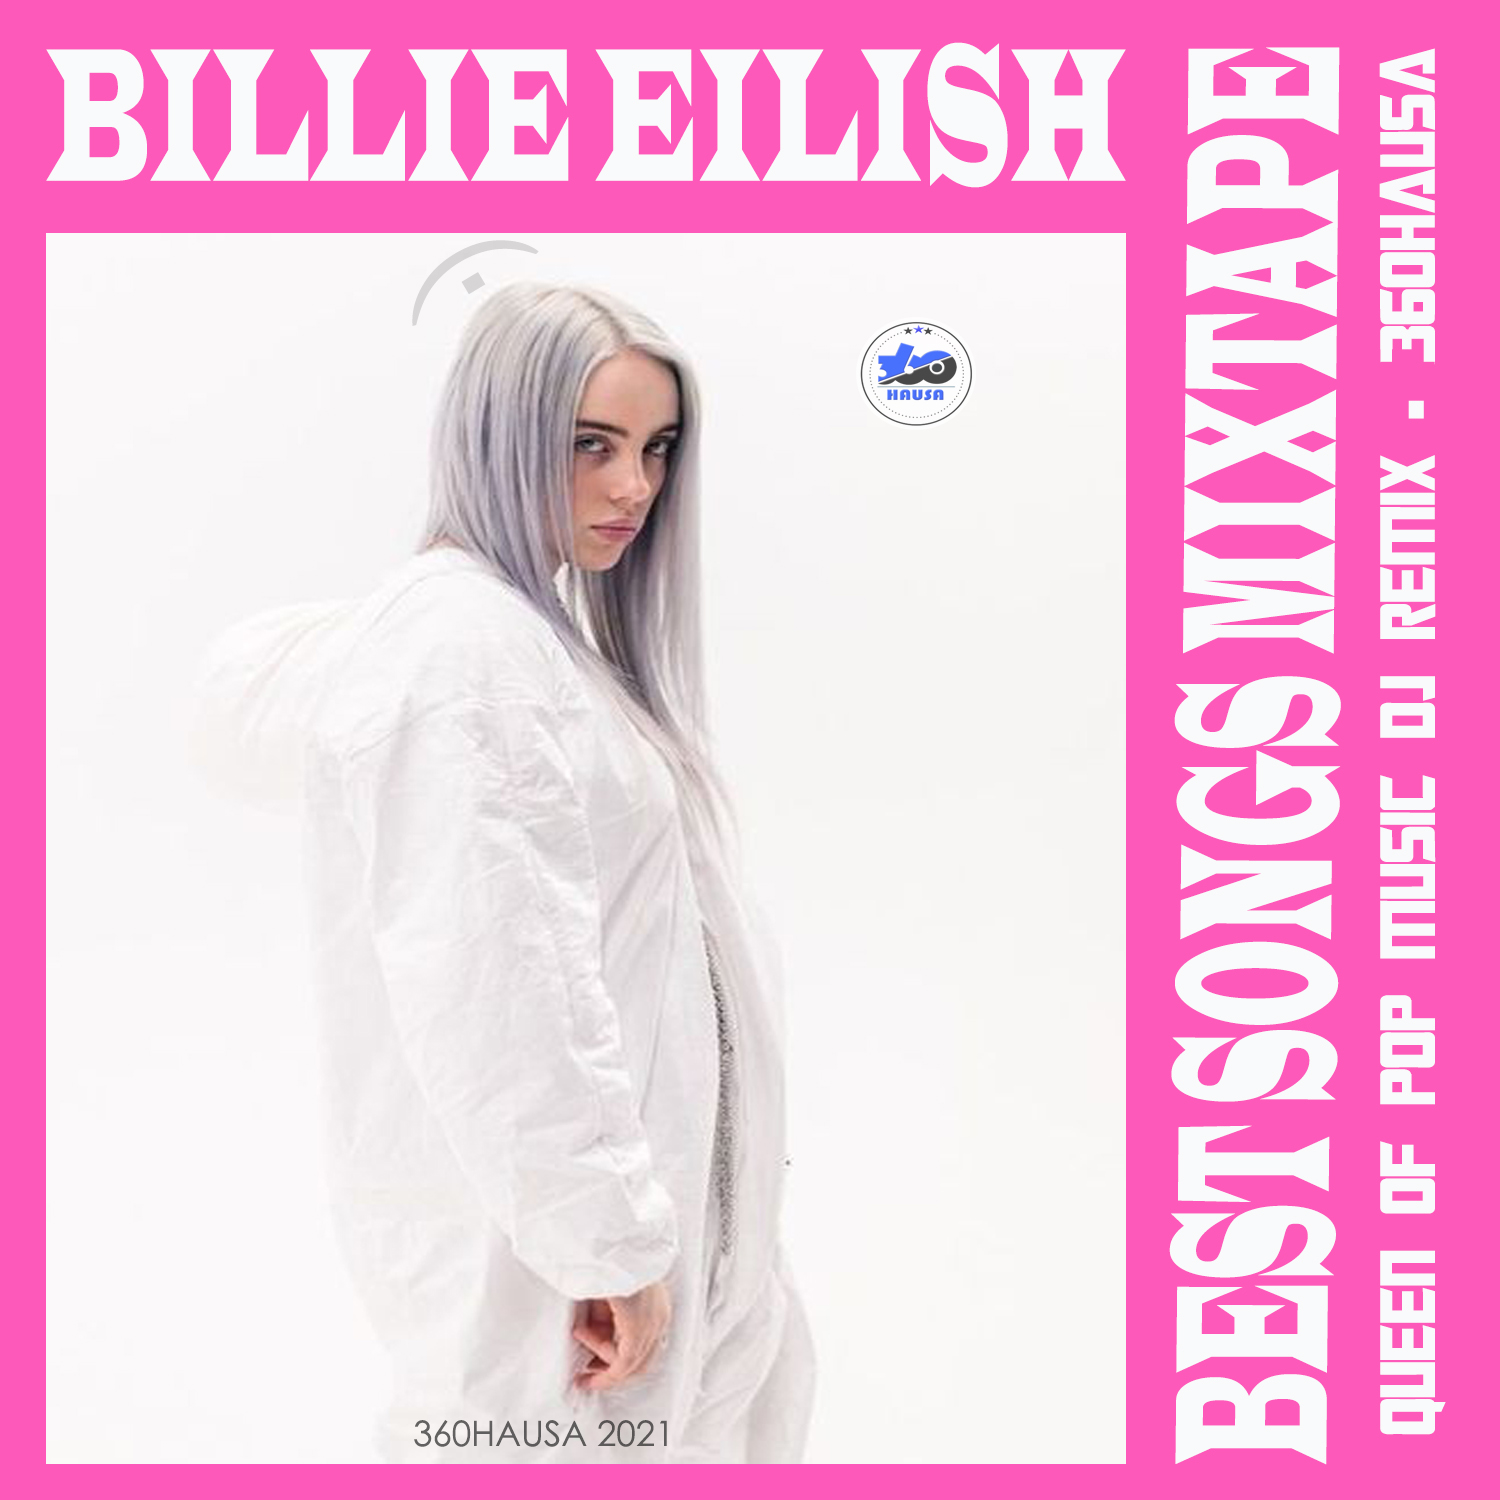 DJ REMIX: Billie Eillish – Best Songs Mixtape 2021 ( Queen Of Pop Music )